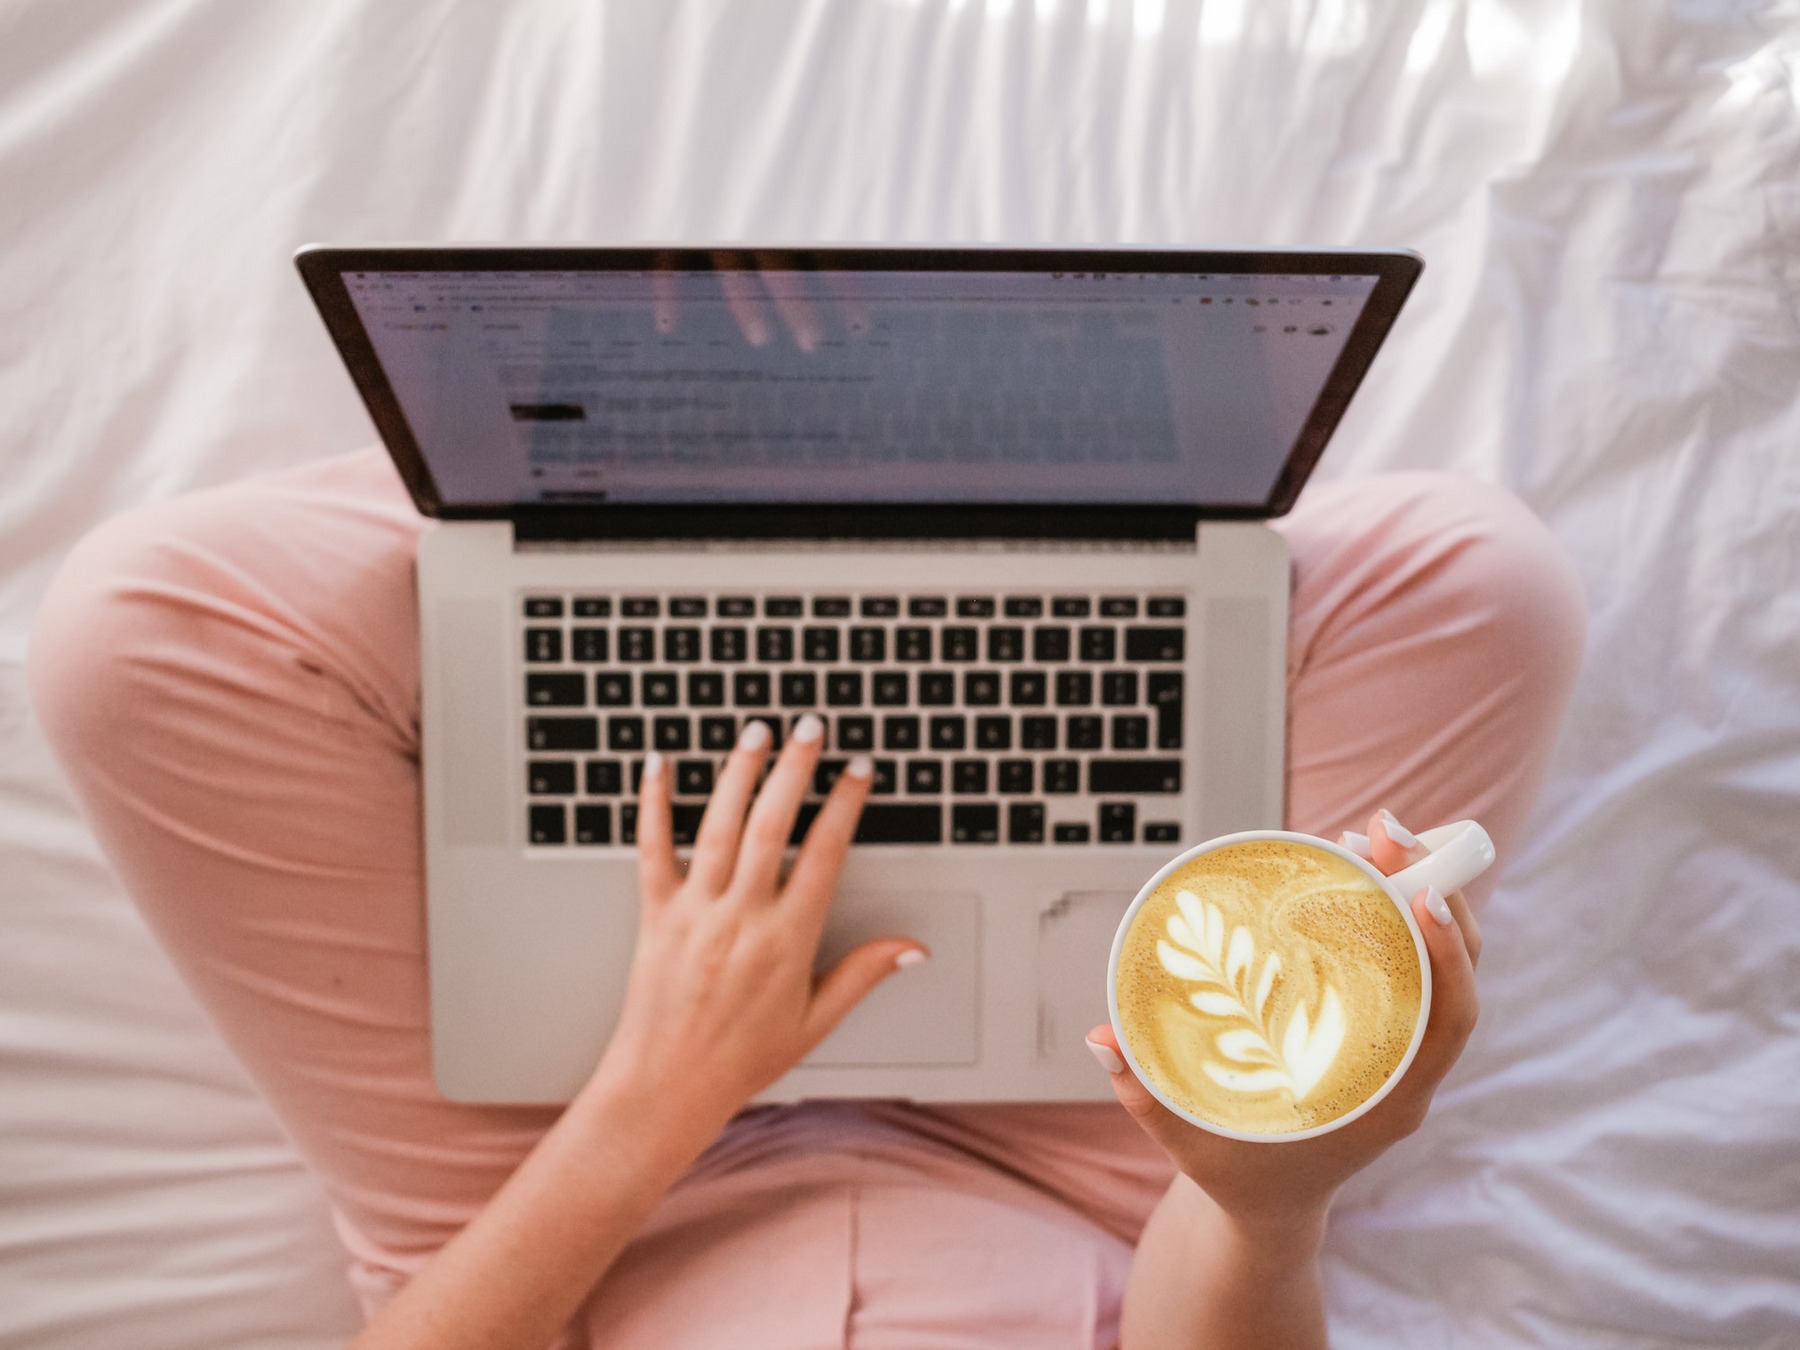 Das Foto zeigt eine Person, die im Bett arbeitet, mit Blick von oben. Sie sitzt im Schneidersitz auf dem Bett und hat den Laptop auf ihren Beinen abgestellt. In der rechten Hand hält sie einen mit aufwendiger Schaumkunst gestalteten Kaffee, der beste Barista-Skills vermuten lässt.